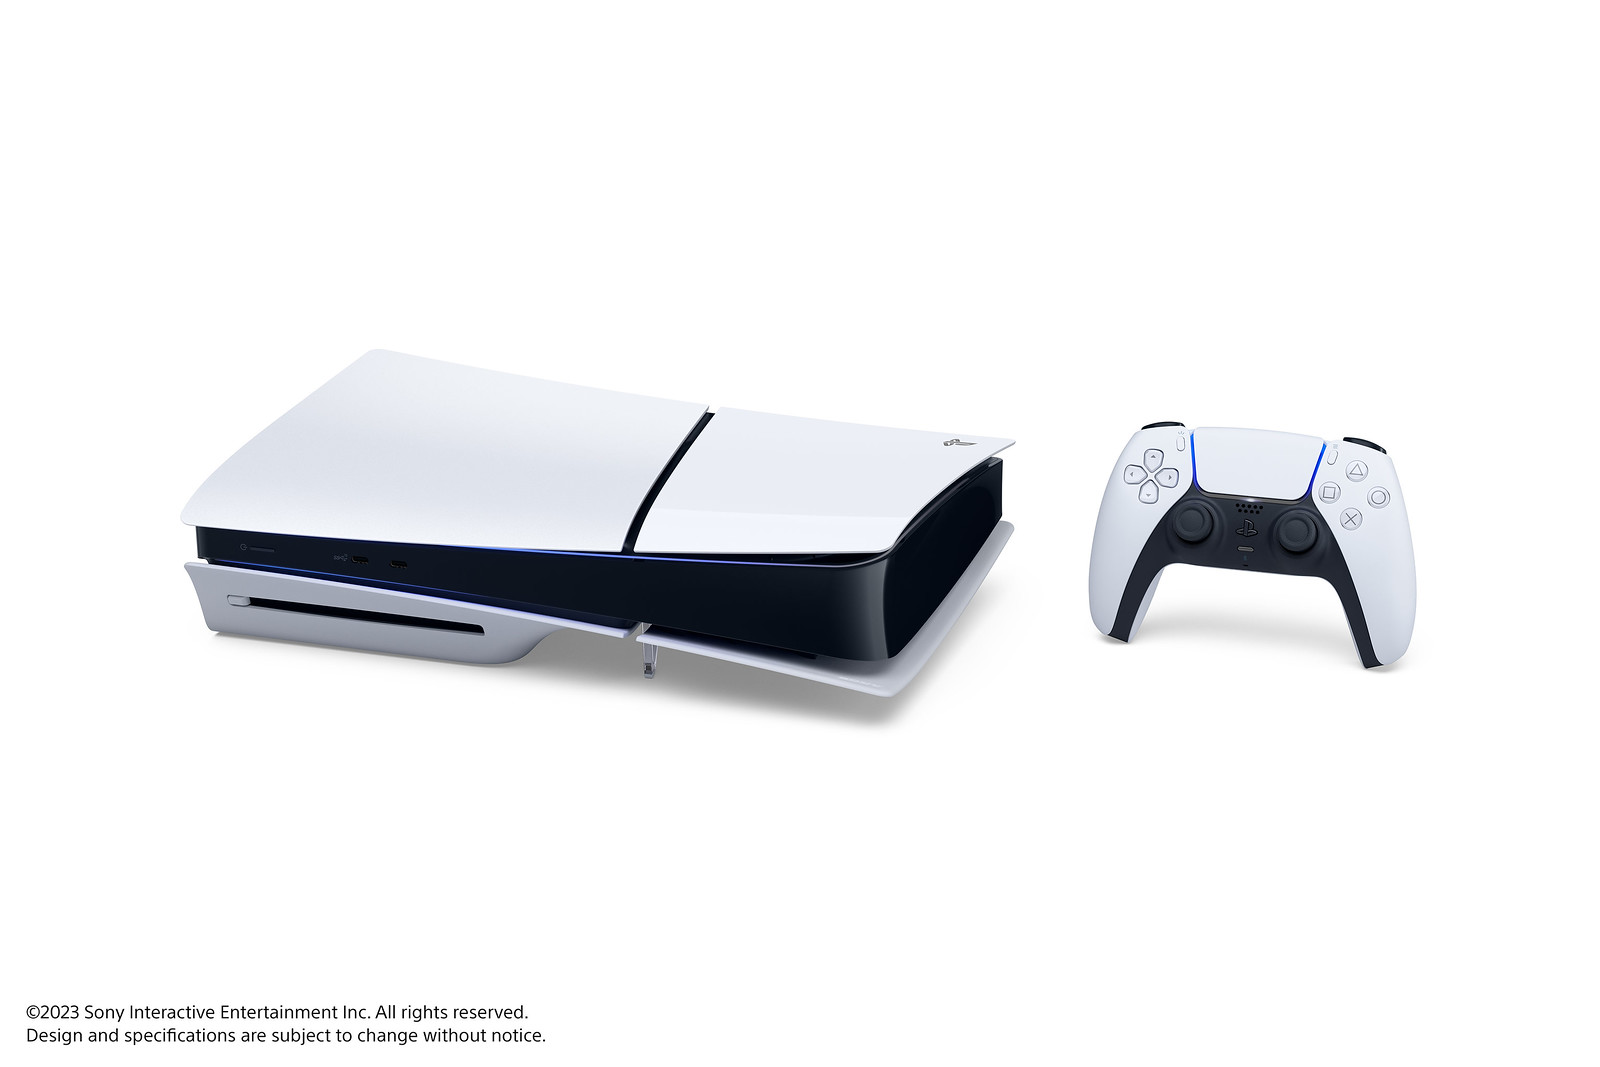 Immagine pubblicata in relazione al seguente contenuto: Sony: PlayStation 5 raggiunge il traguardo di 50 milioni di unit vendute | Nome immagine: news35135_PlayStation-5-Achieves-Milestone-of-50-Million-Units-Sold-to-Consumers_1.jpg